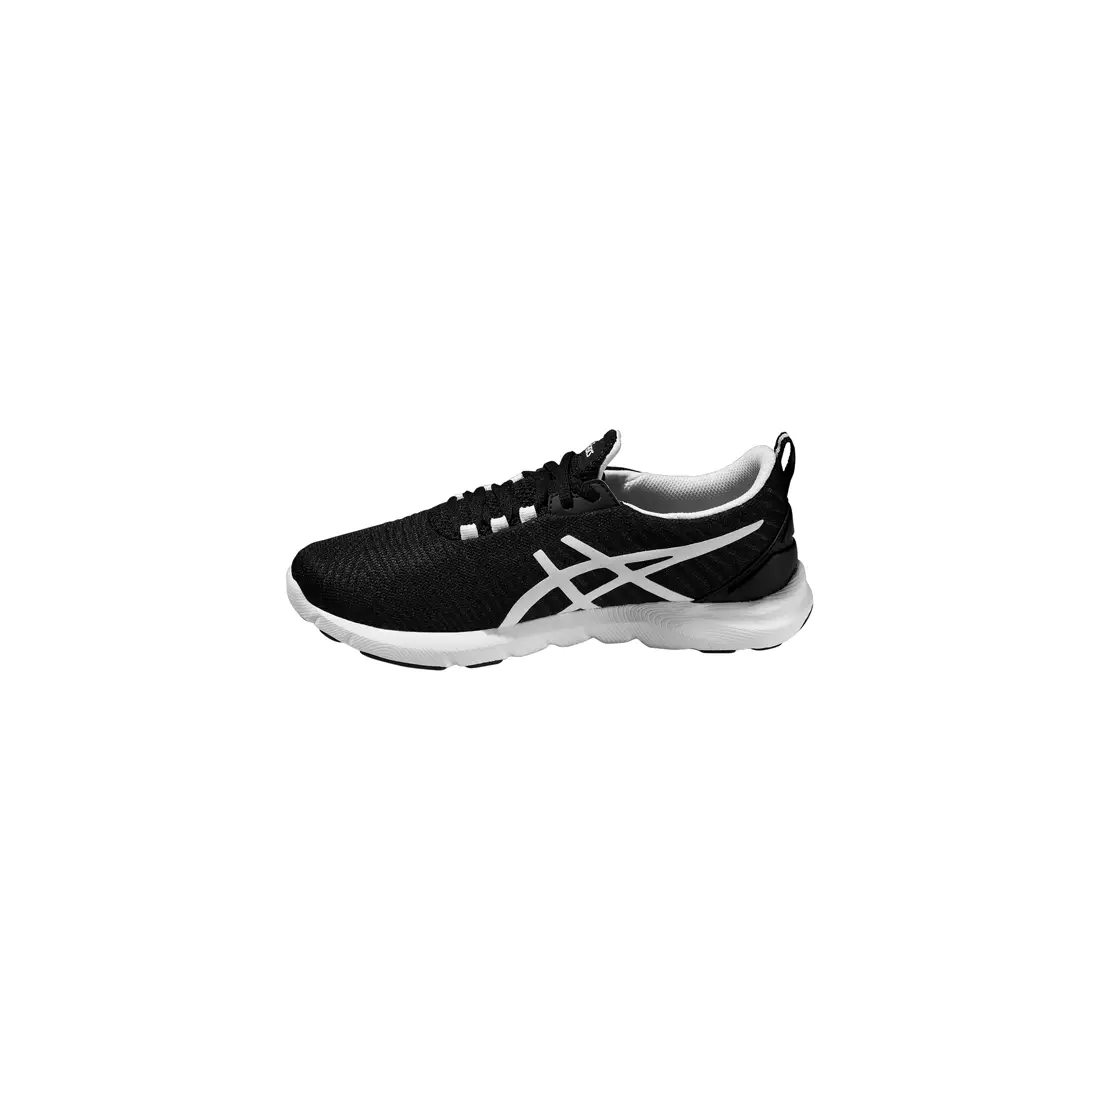 ASICS SUPERSEN women's running shoes T673N 9001